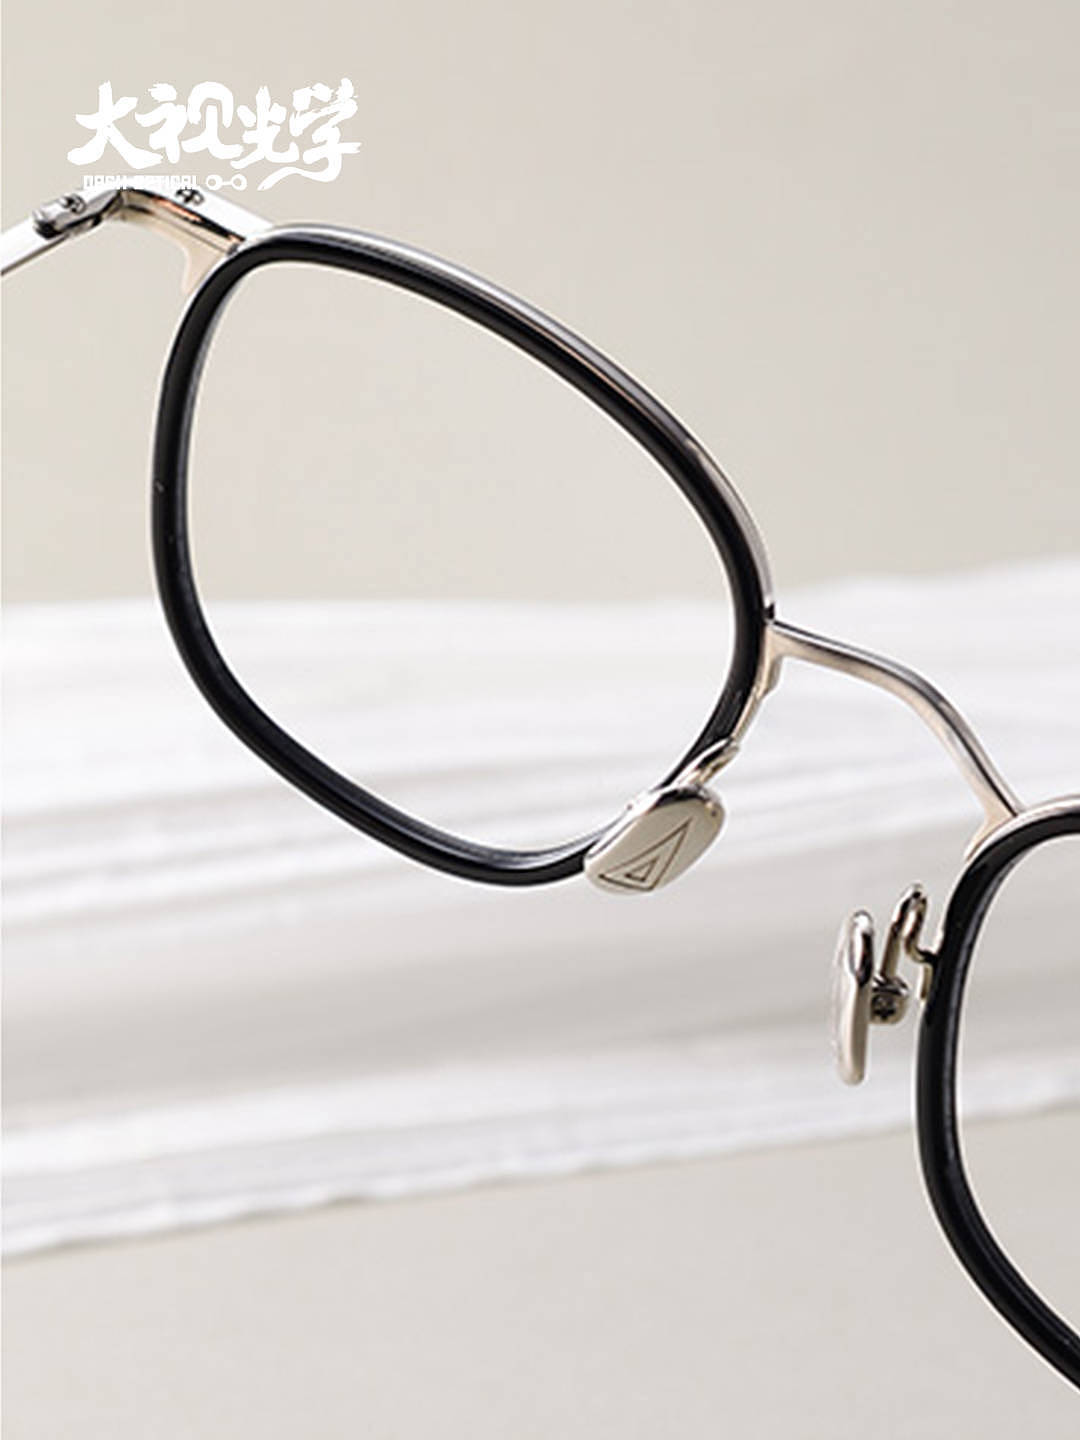 金子眼镜日本手工板材金属框型镜架 - 1